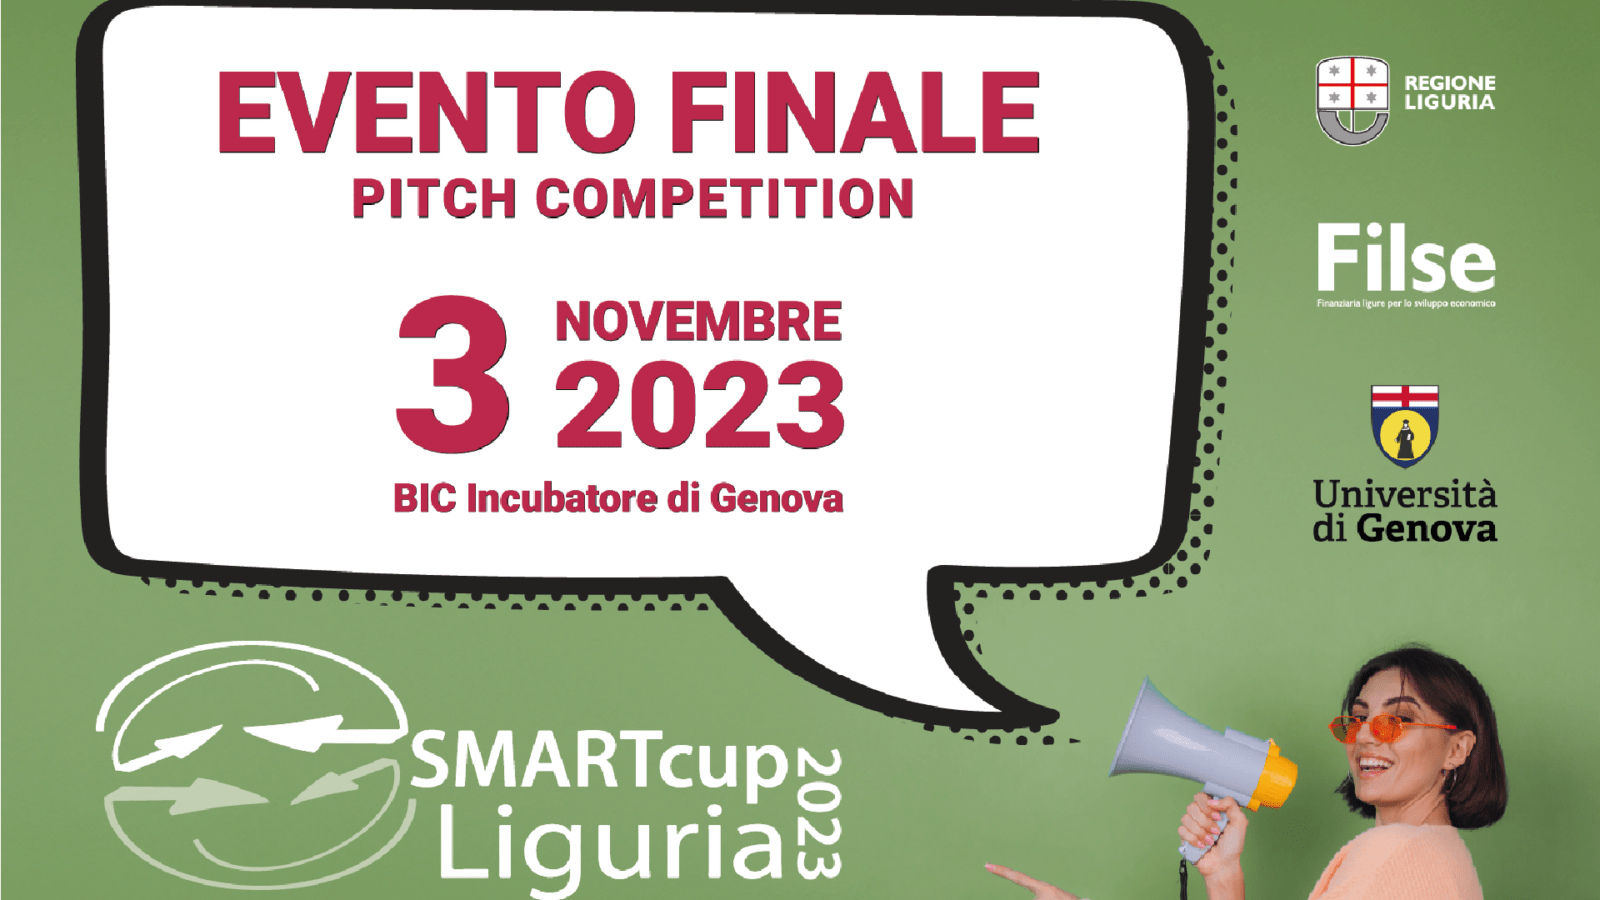 SMARTcup Liguria 2023: l’evento finale